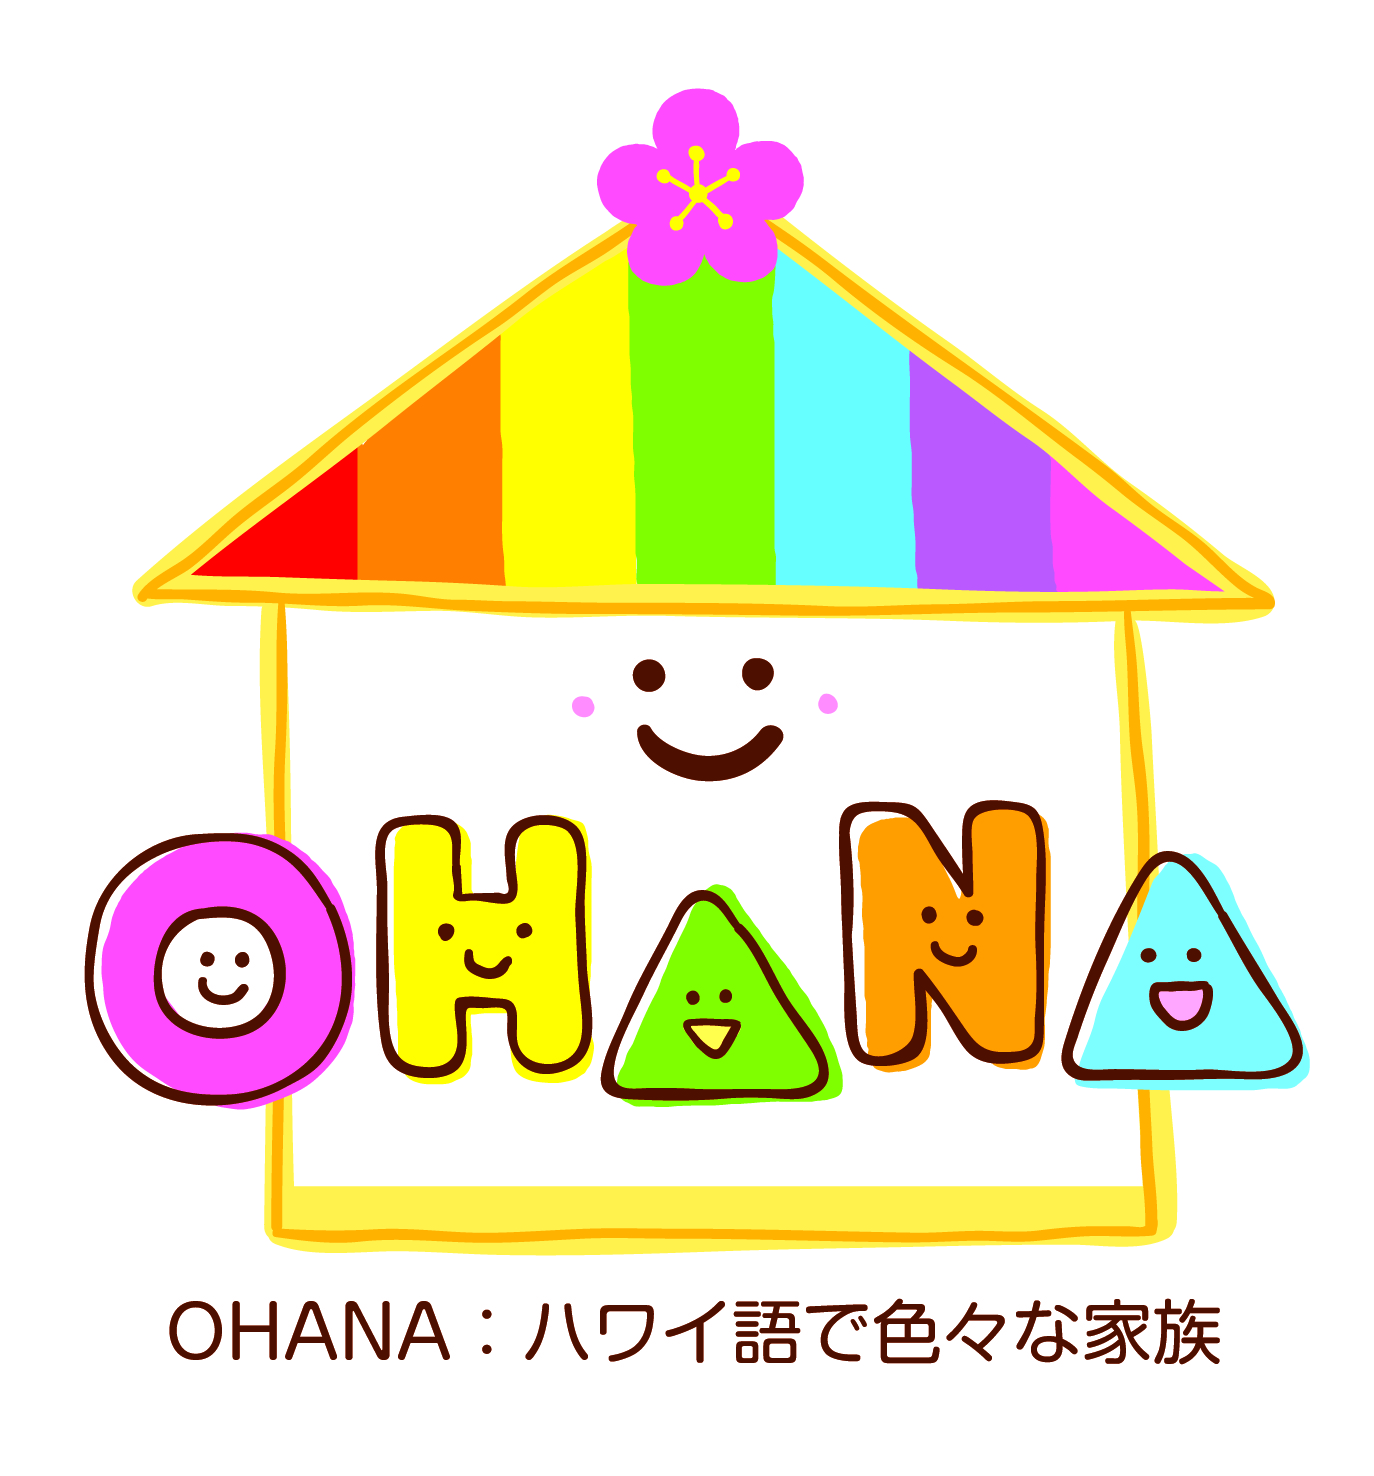 福岡県里親支援機関OHANAのご紹介